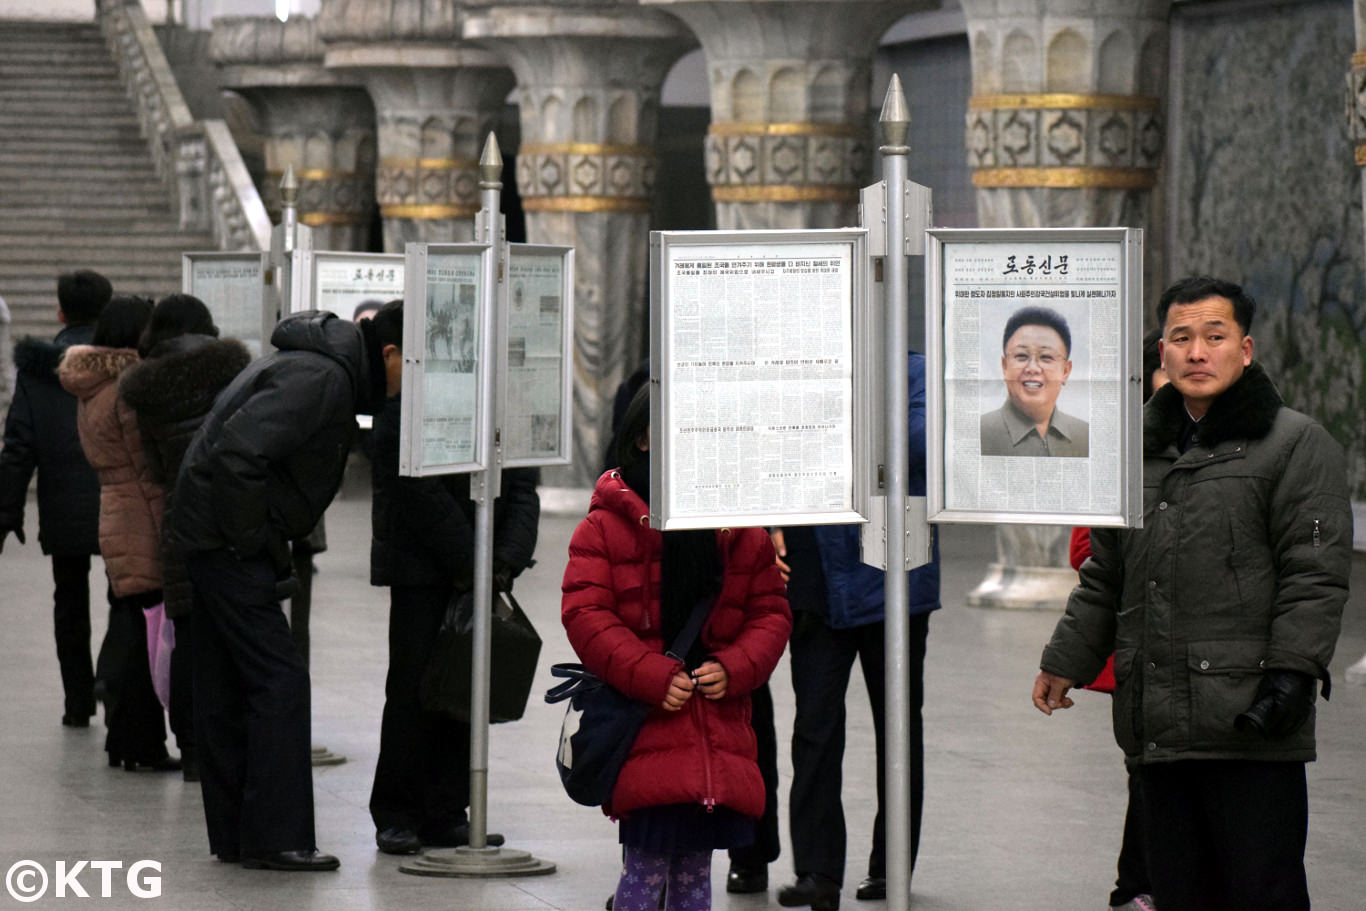 Transeúntes norcoreanos leyendo el periódico en la estación de metro. Foto tomada por viajes KTG